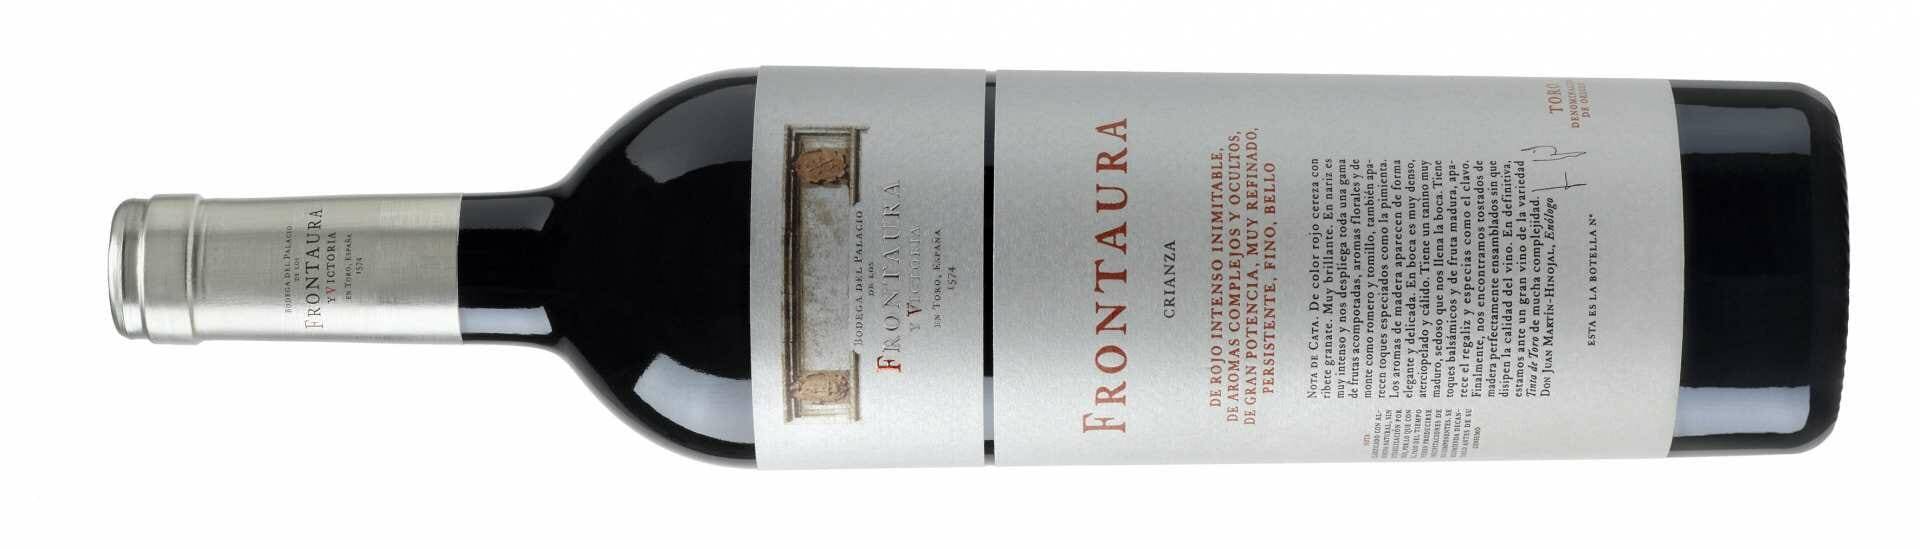 Frontaura, un vino de Toro excelente.